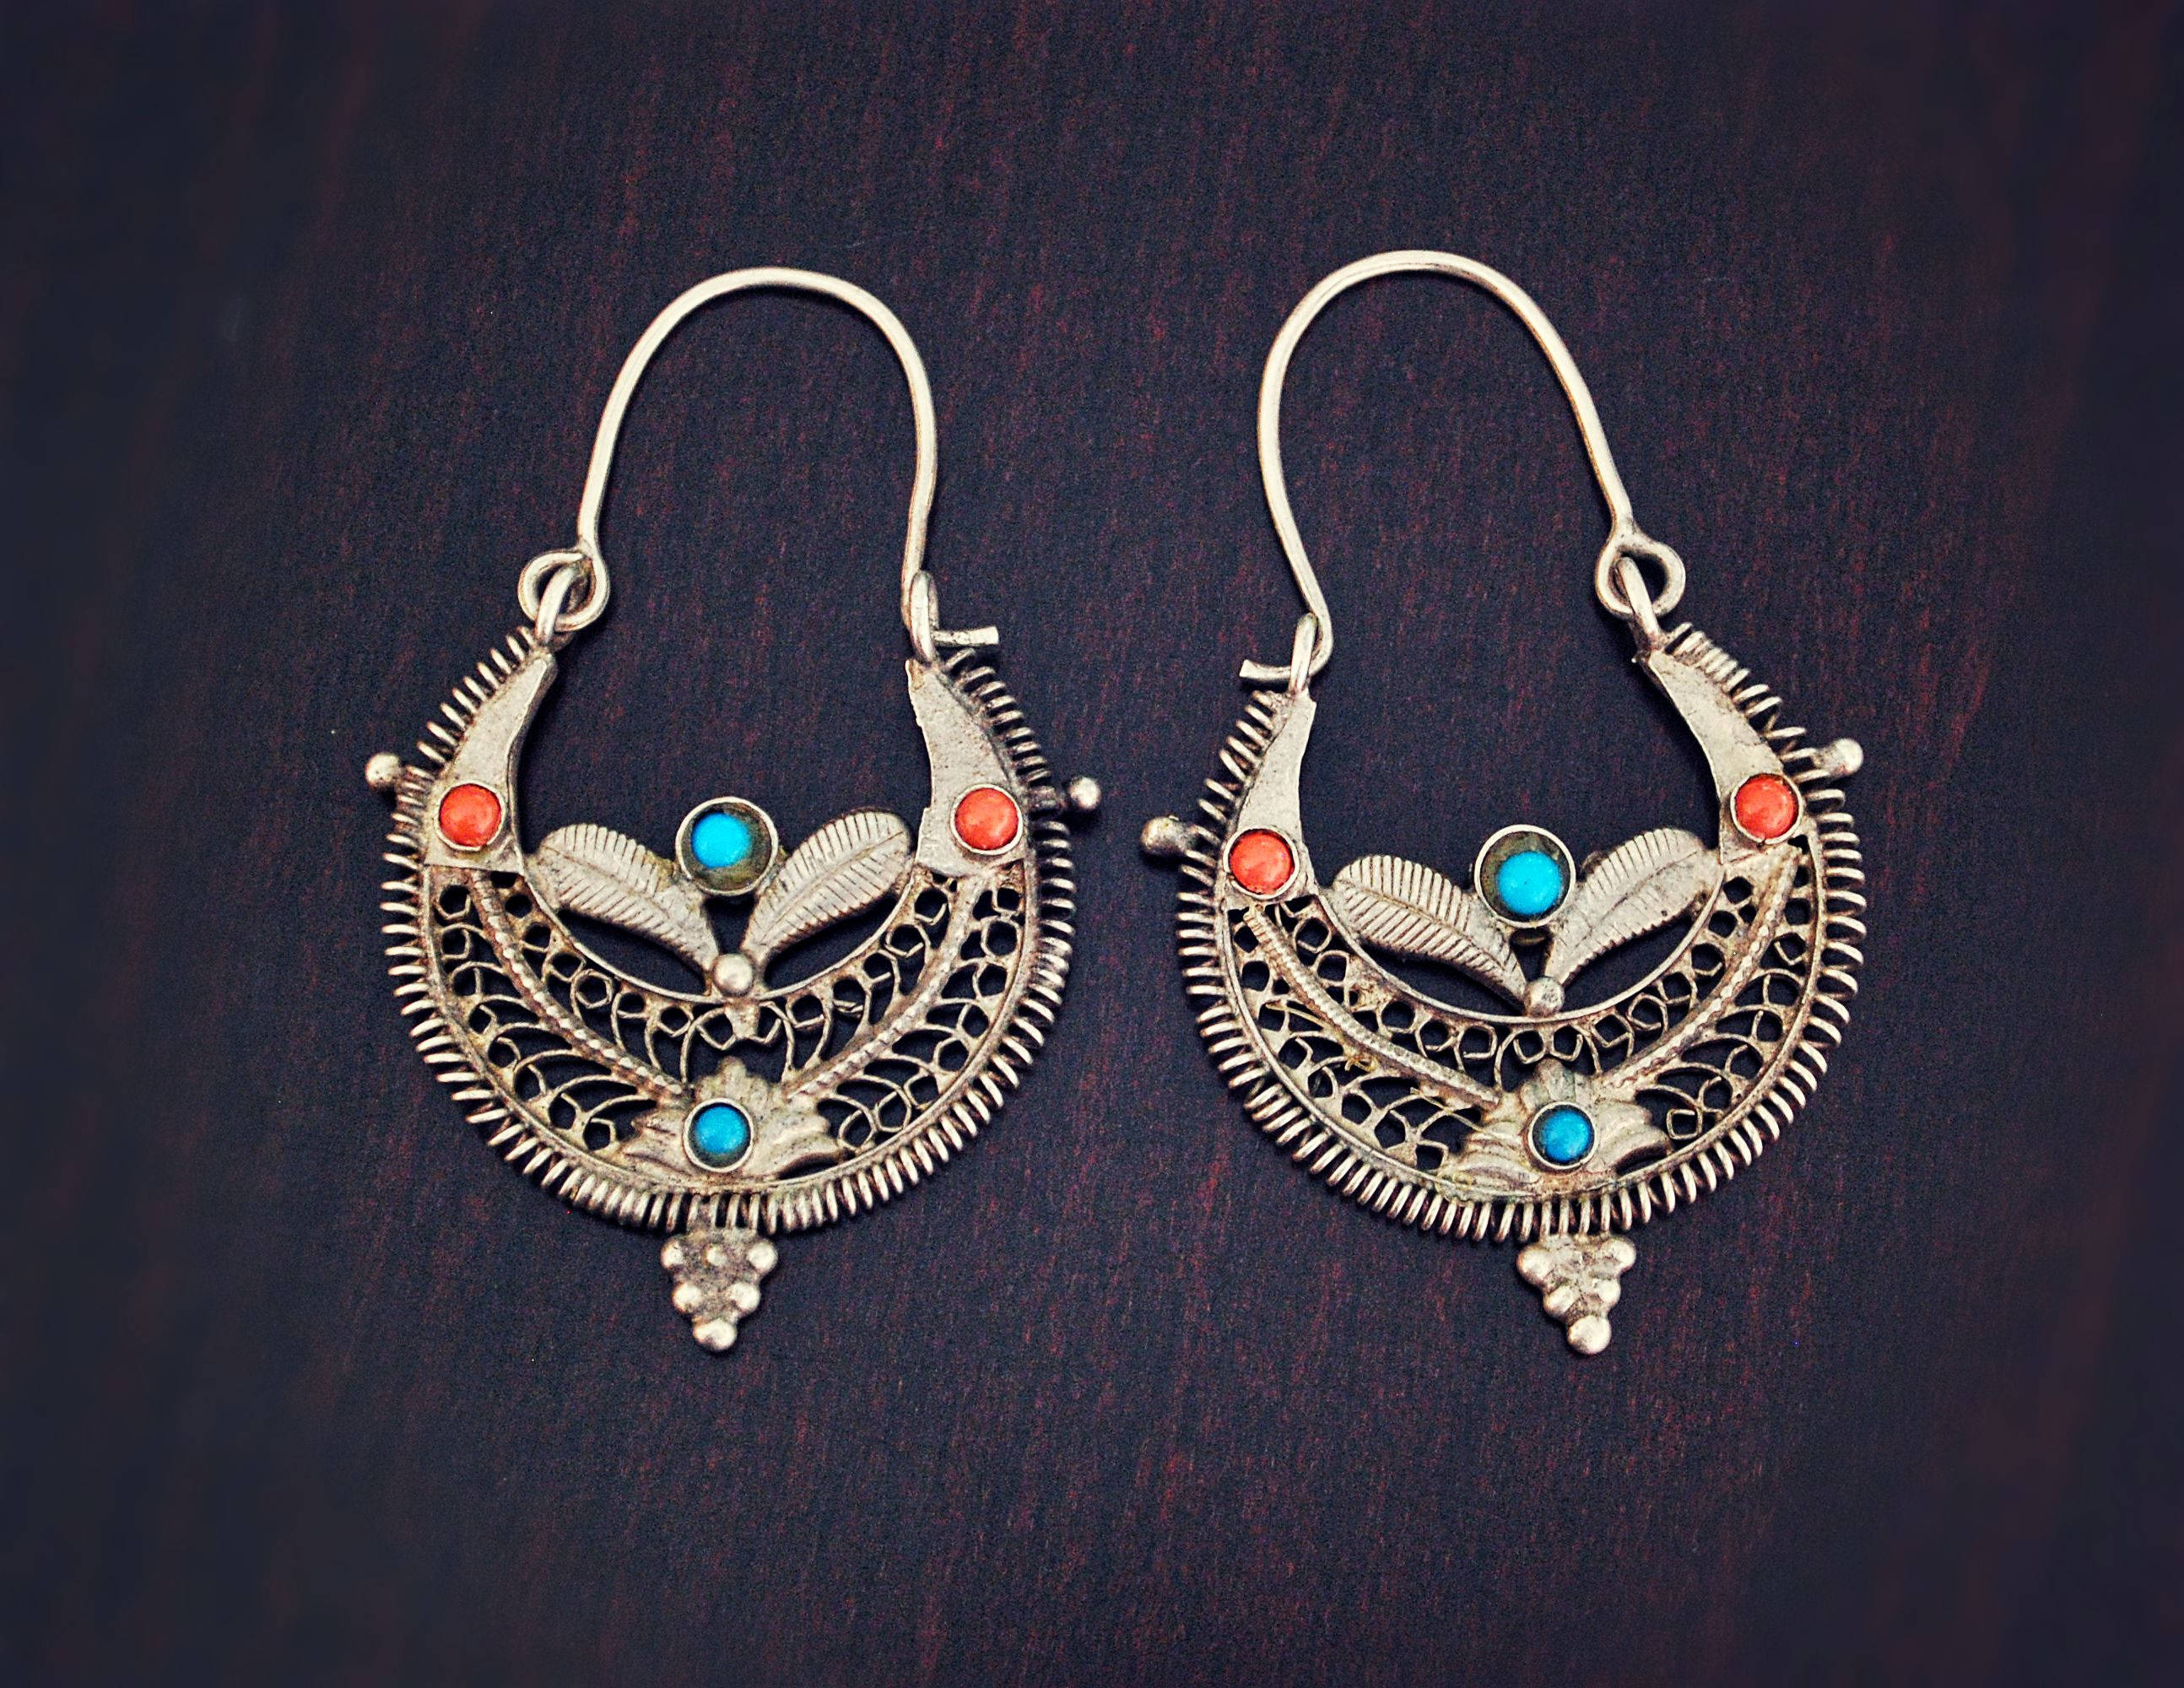 Big Afghani Tribal Hoop Earrings with Colored Glass - Tribal Hoop Earrings - Afghani Earrings - Ethnic Hoop Earrings - Afghani Jewelry